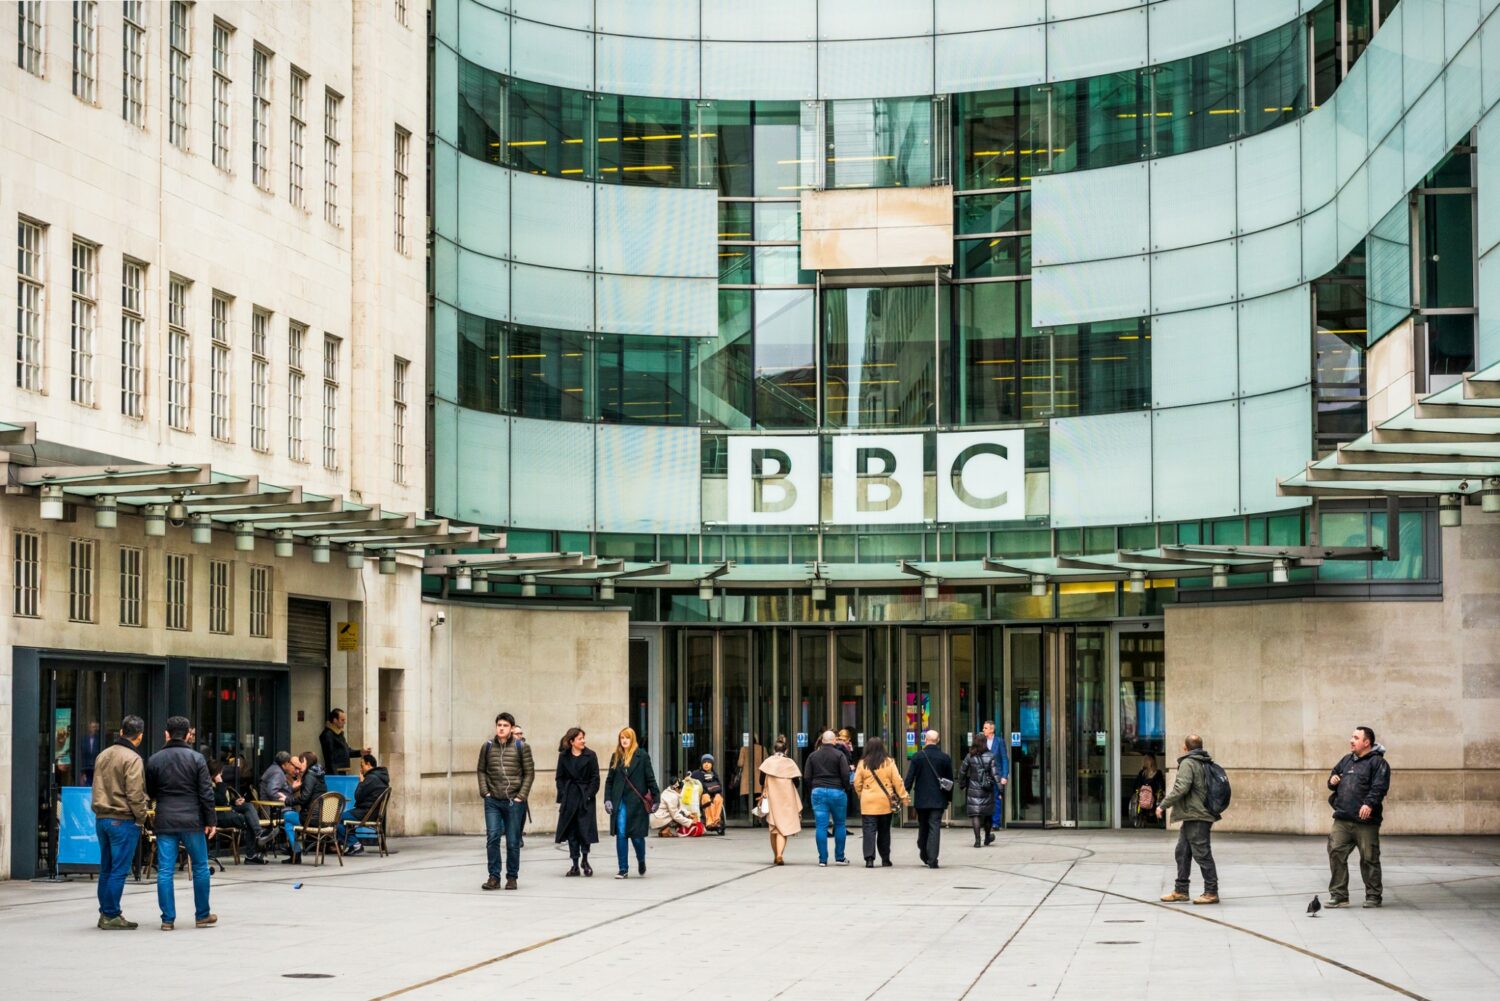 Βρετανία: Η κυβέρνηση θα διακόψει τη χρηματοδότηση του BBC